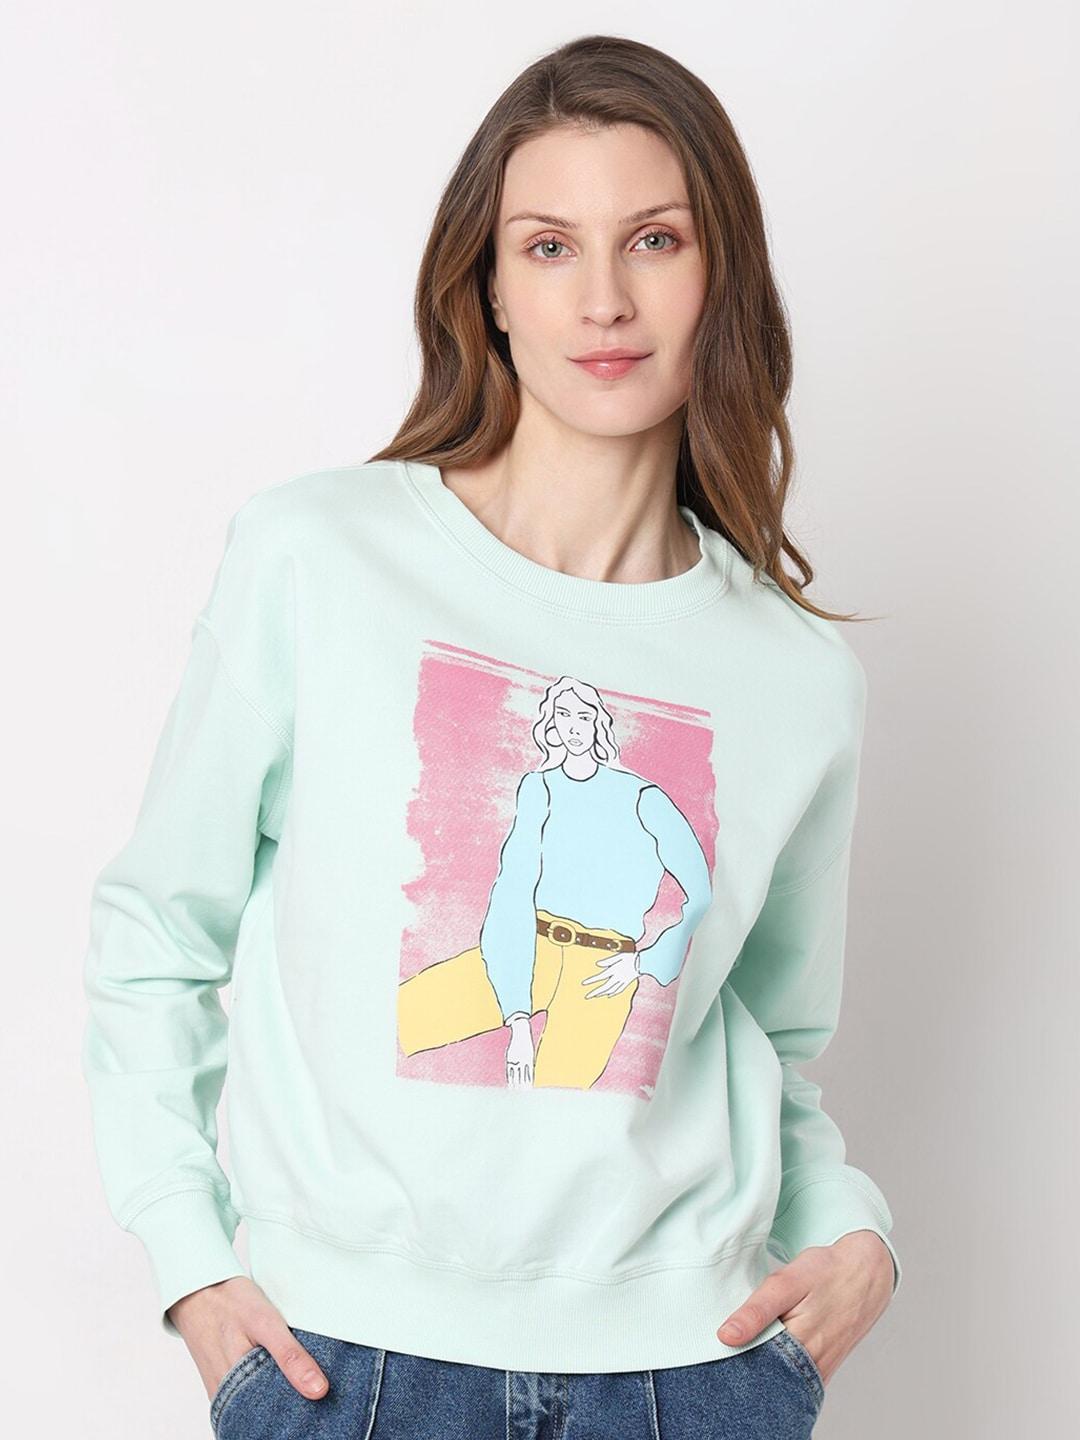 vero-moda-graphic-printed-pure-cotton-pullover-sweatshirt